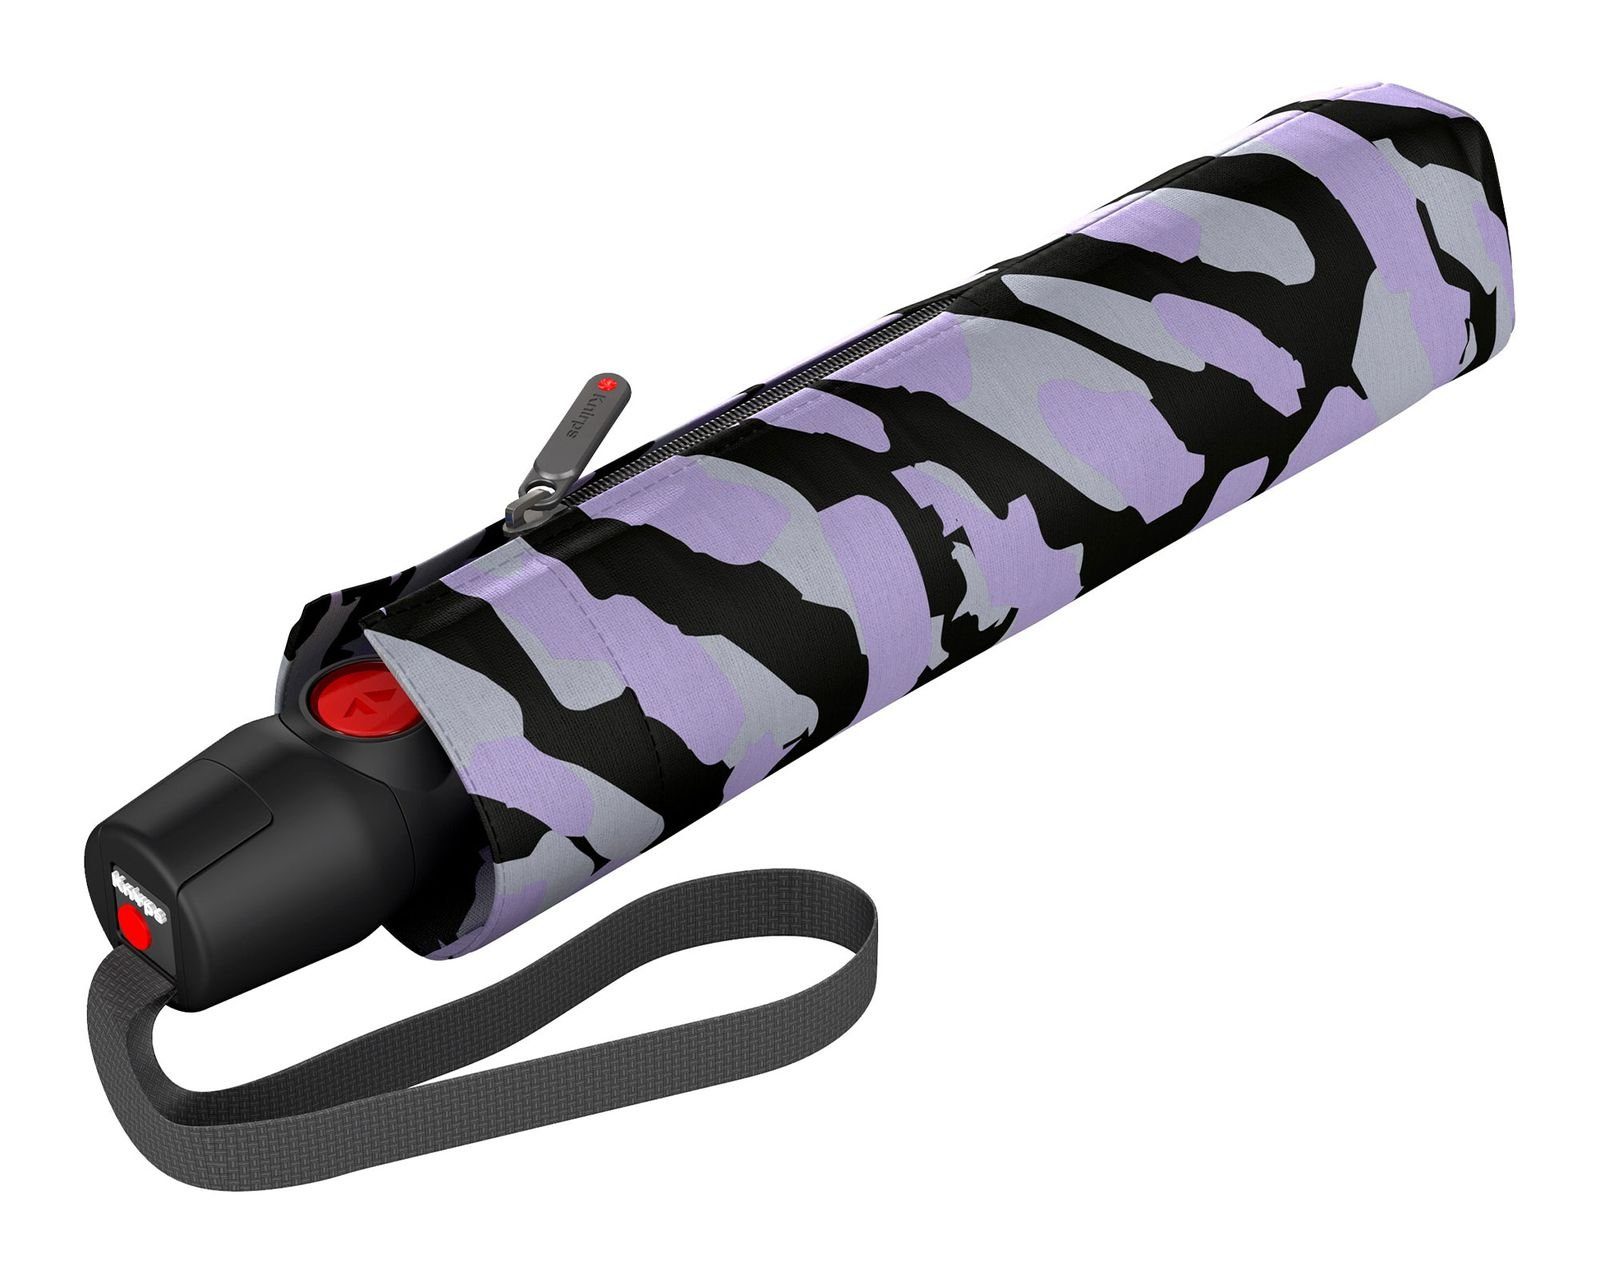 Taschenregenschirm Lavender Knirps® T.200